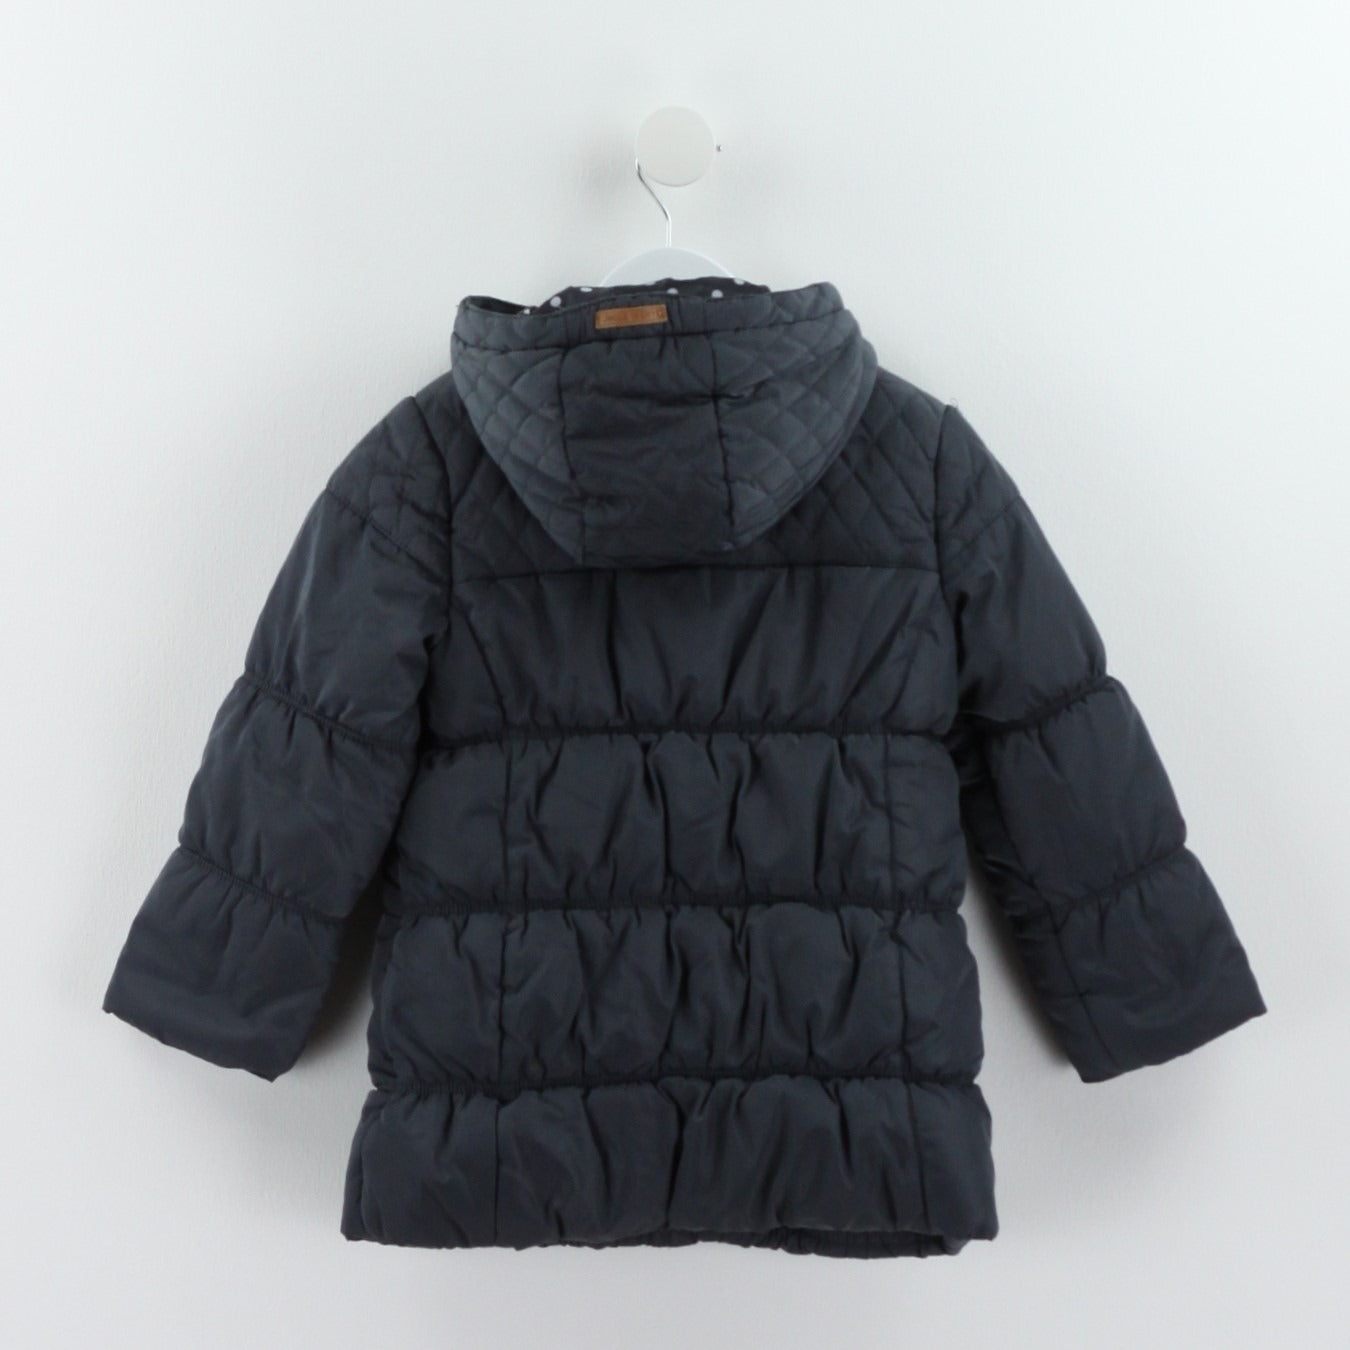 Pre-loved Winter Jacket (4Y)